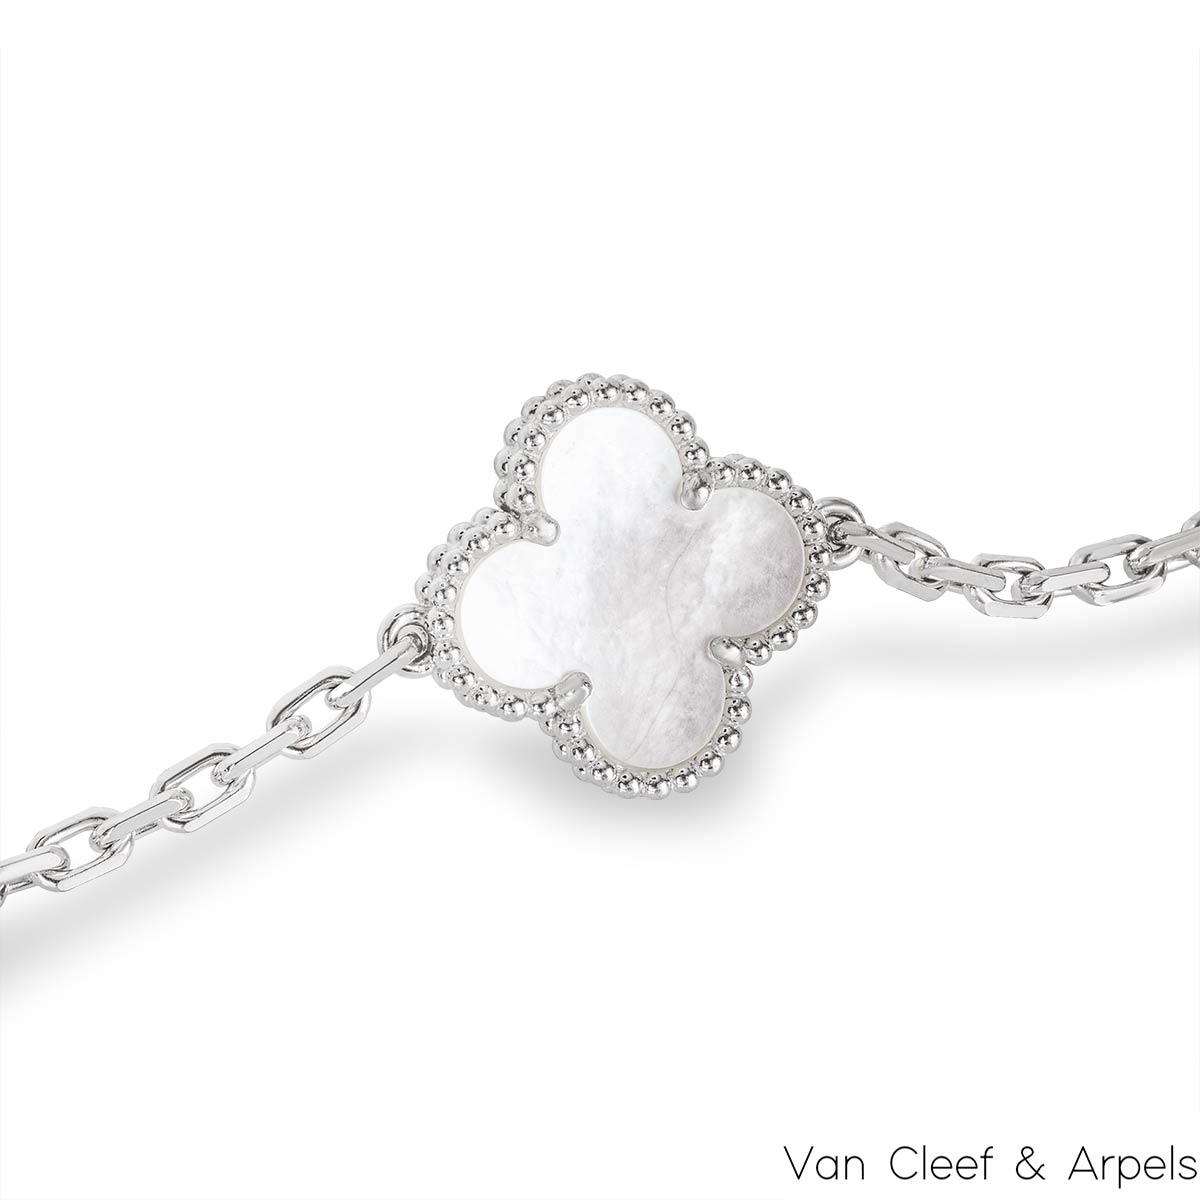 Van Cleef & Arpels Alhambra Bracelet 277484